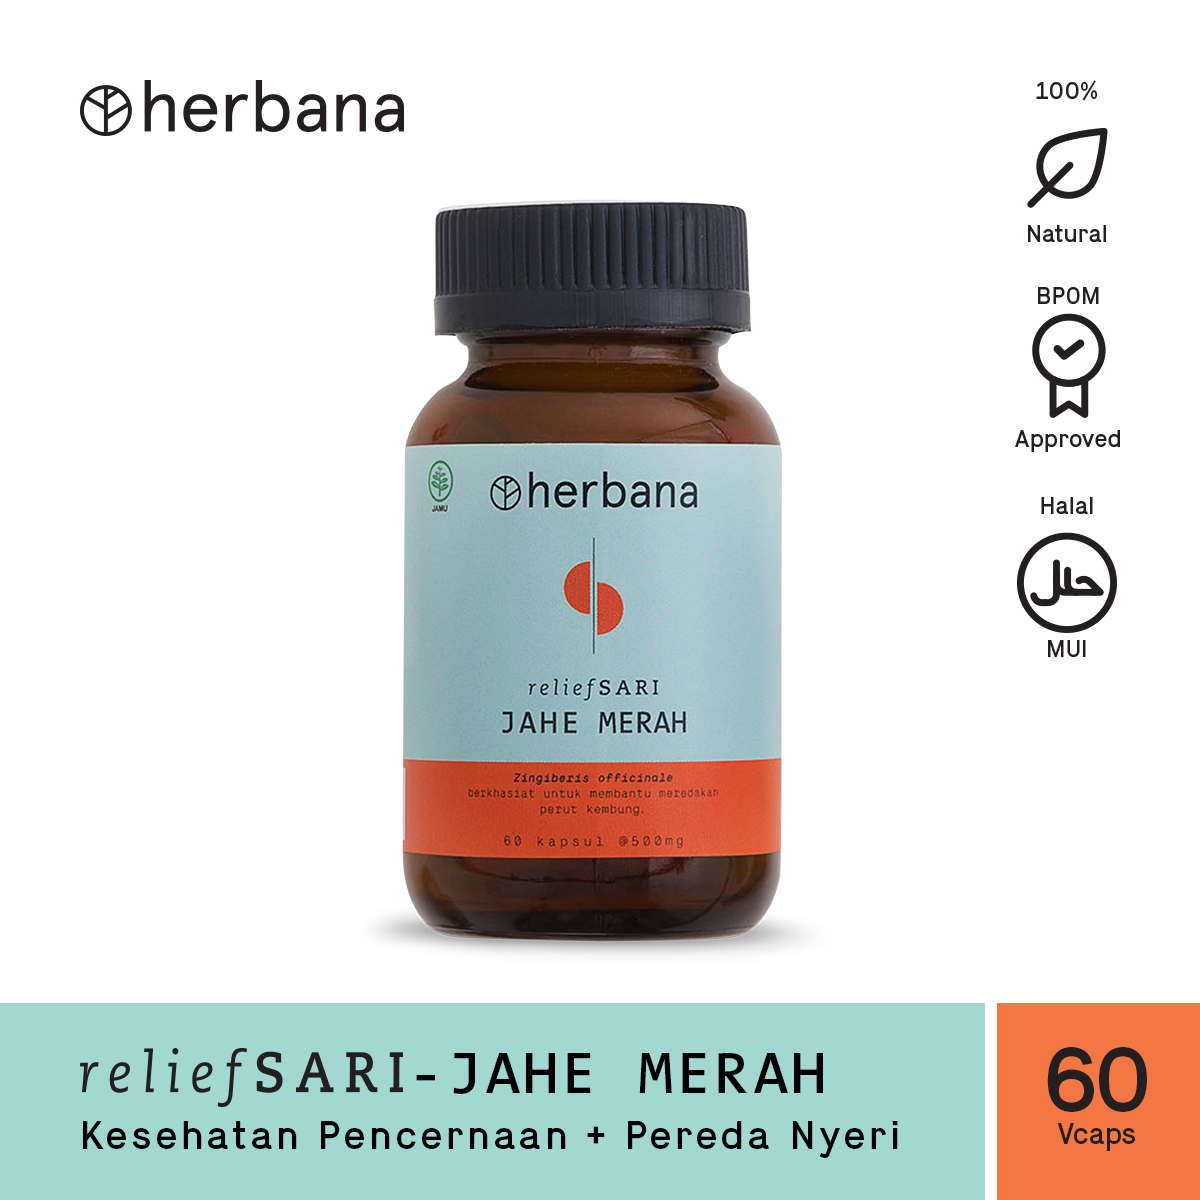 herbana-relief-sari-jahe-merah-60-capsules-76-1615972703.jpg